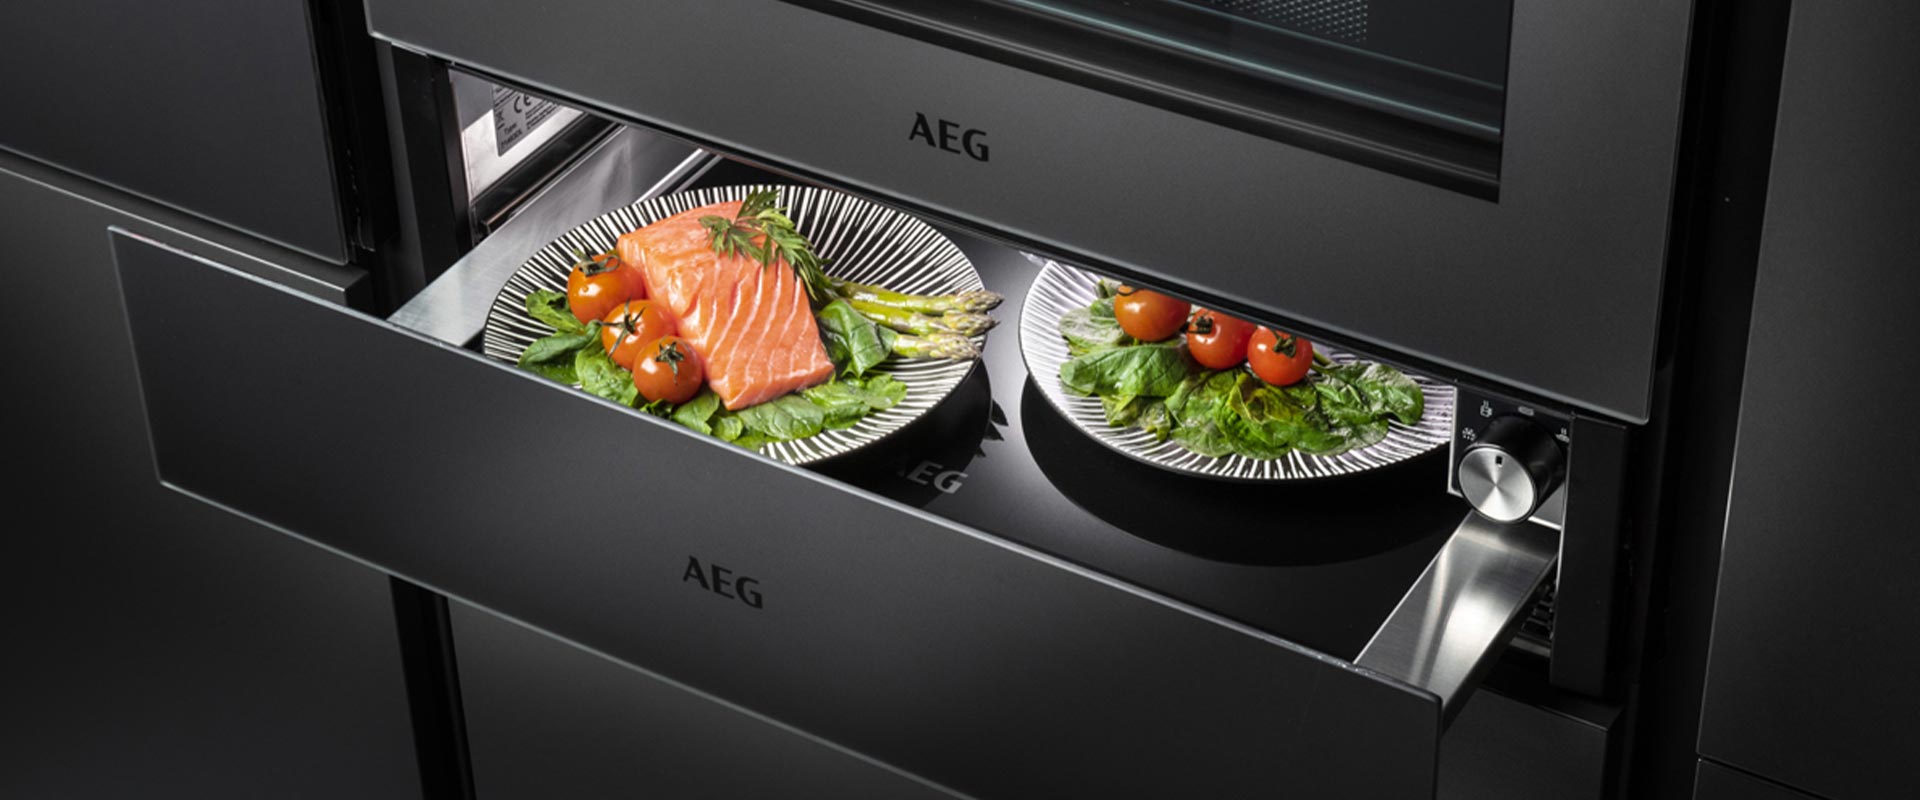 Nieuwste generatie ovens - Vriend en helper in de keuken